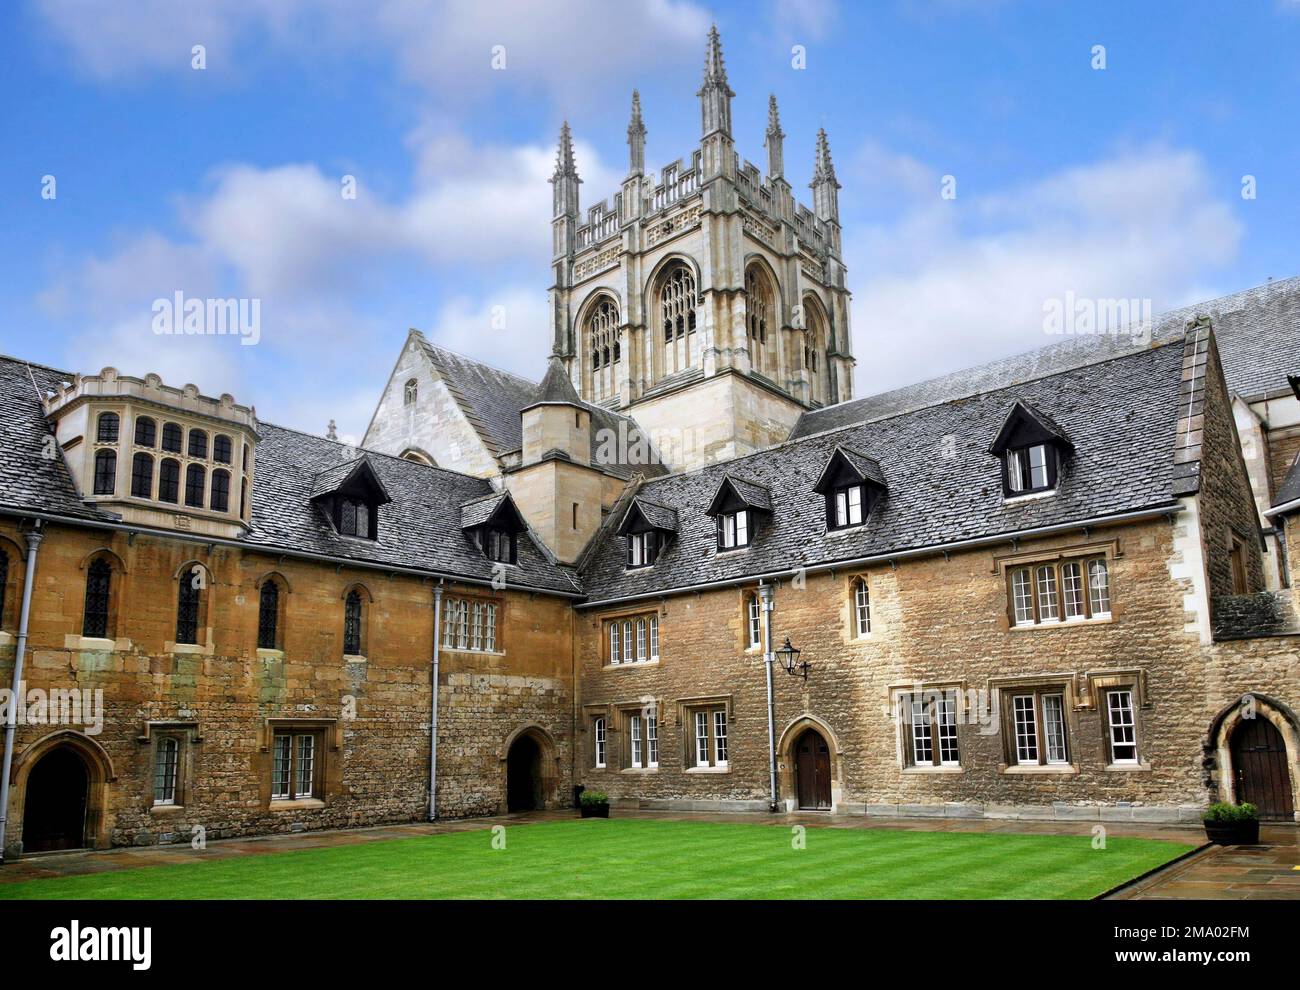 Oxford, Inghilterra - 2009 agosto: Un cortile medievale interno del Merton College, Università di Oxford, con la torre gotica della cappella sullo sfondo Foto Stock